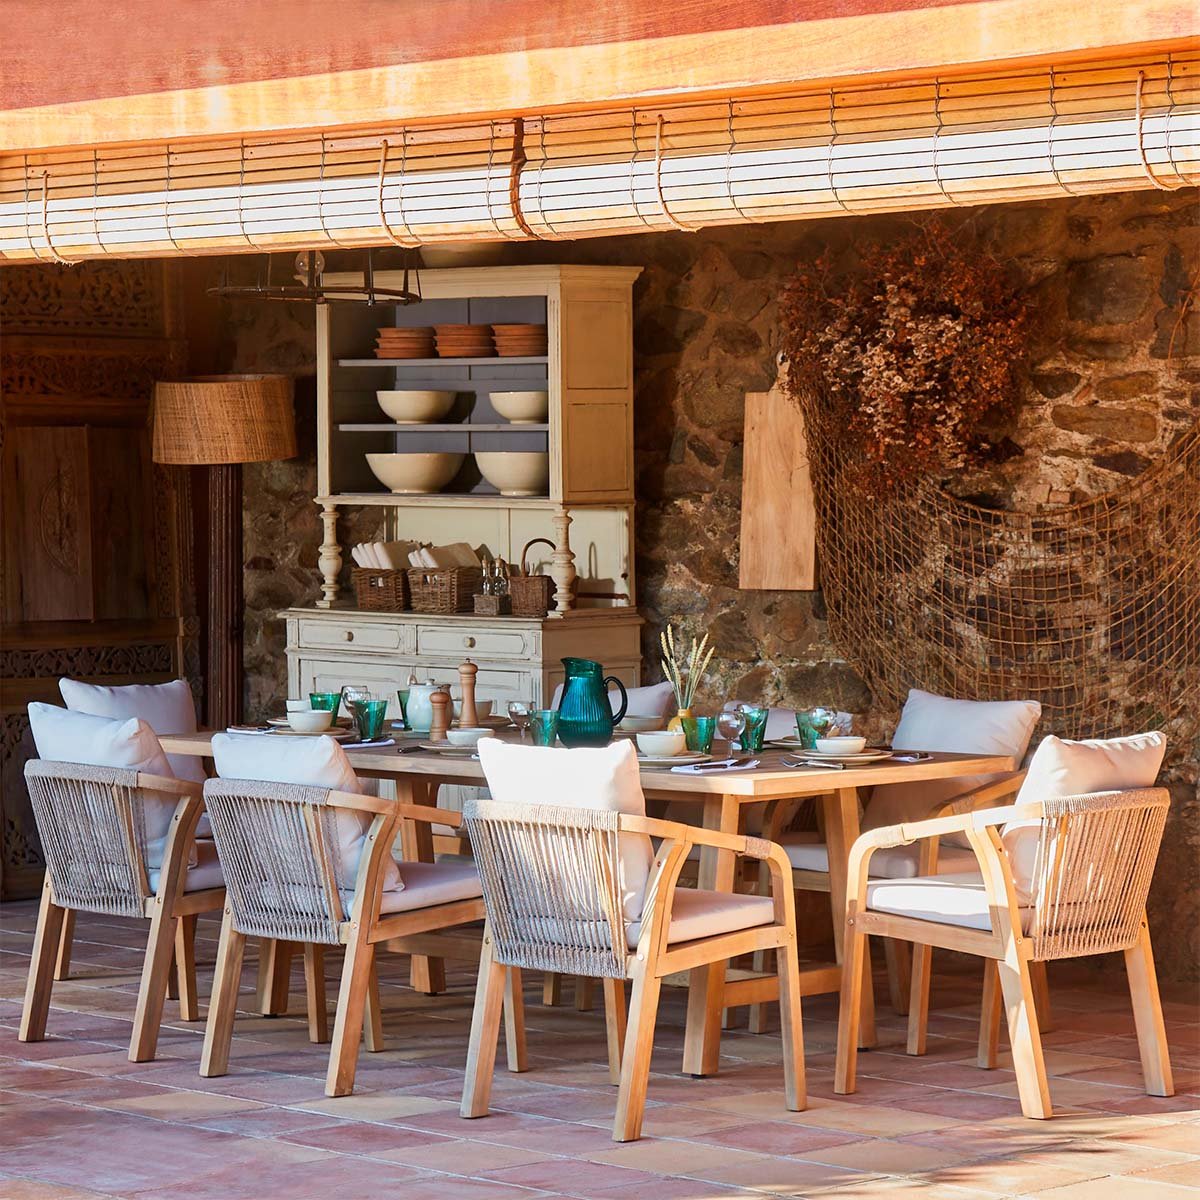 Set tavolo e sedie da giardino 6 posti in legno e corda - Riviera - Kerama